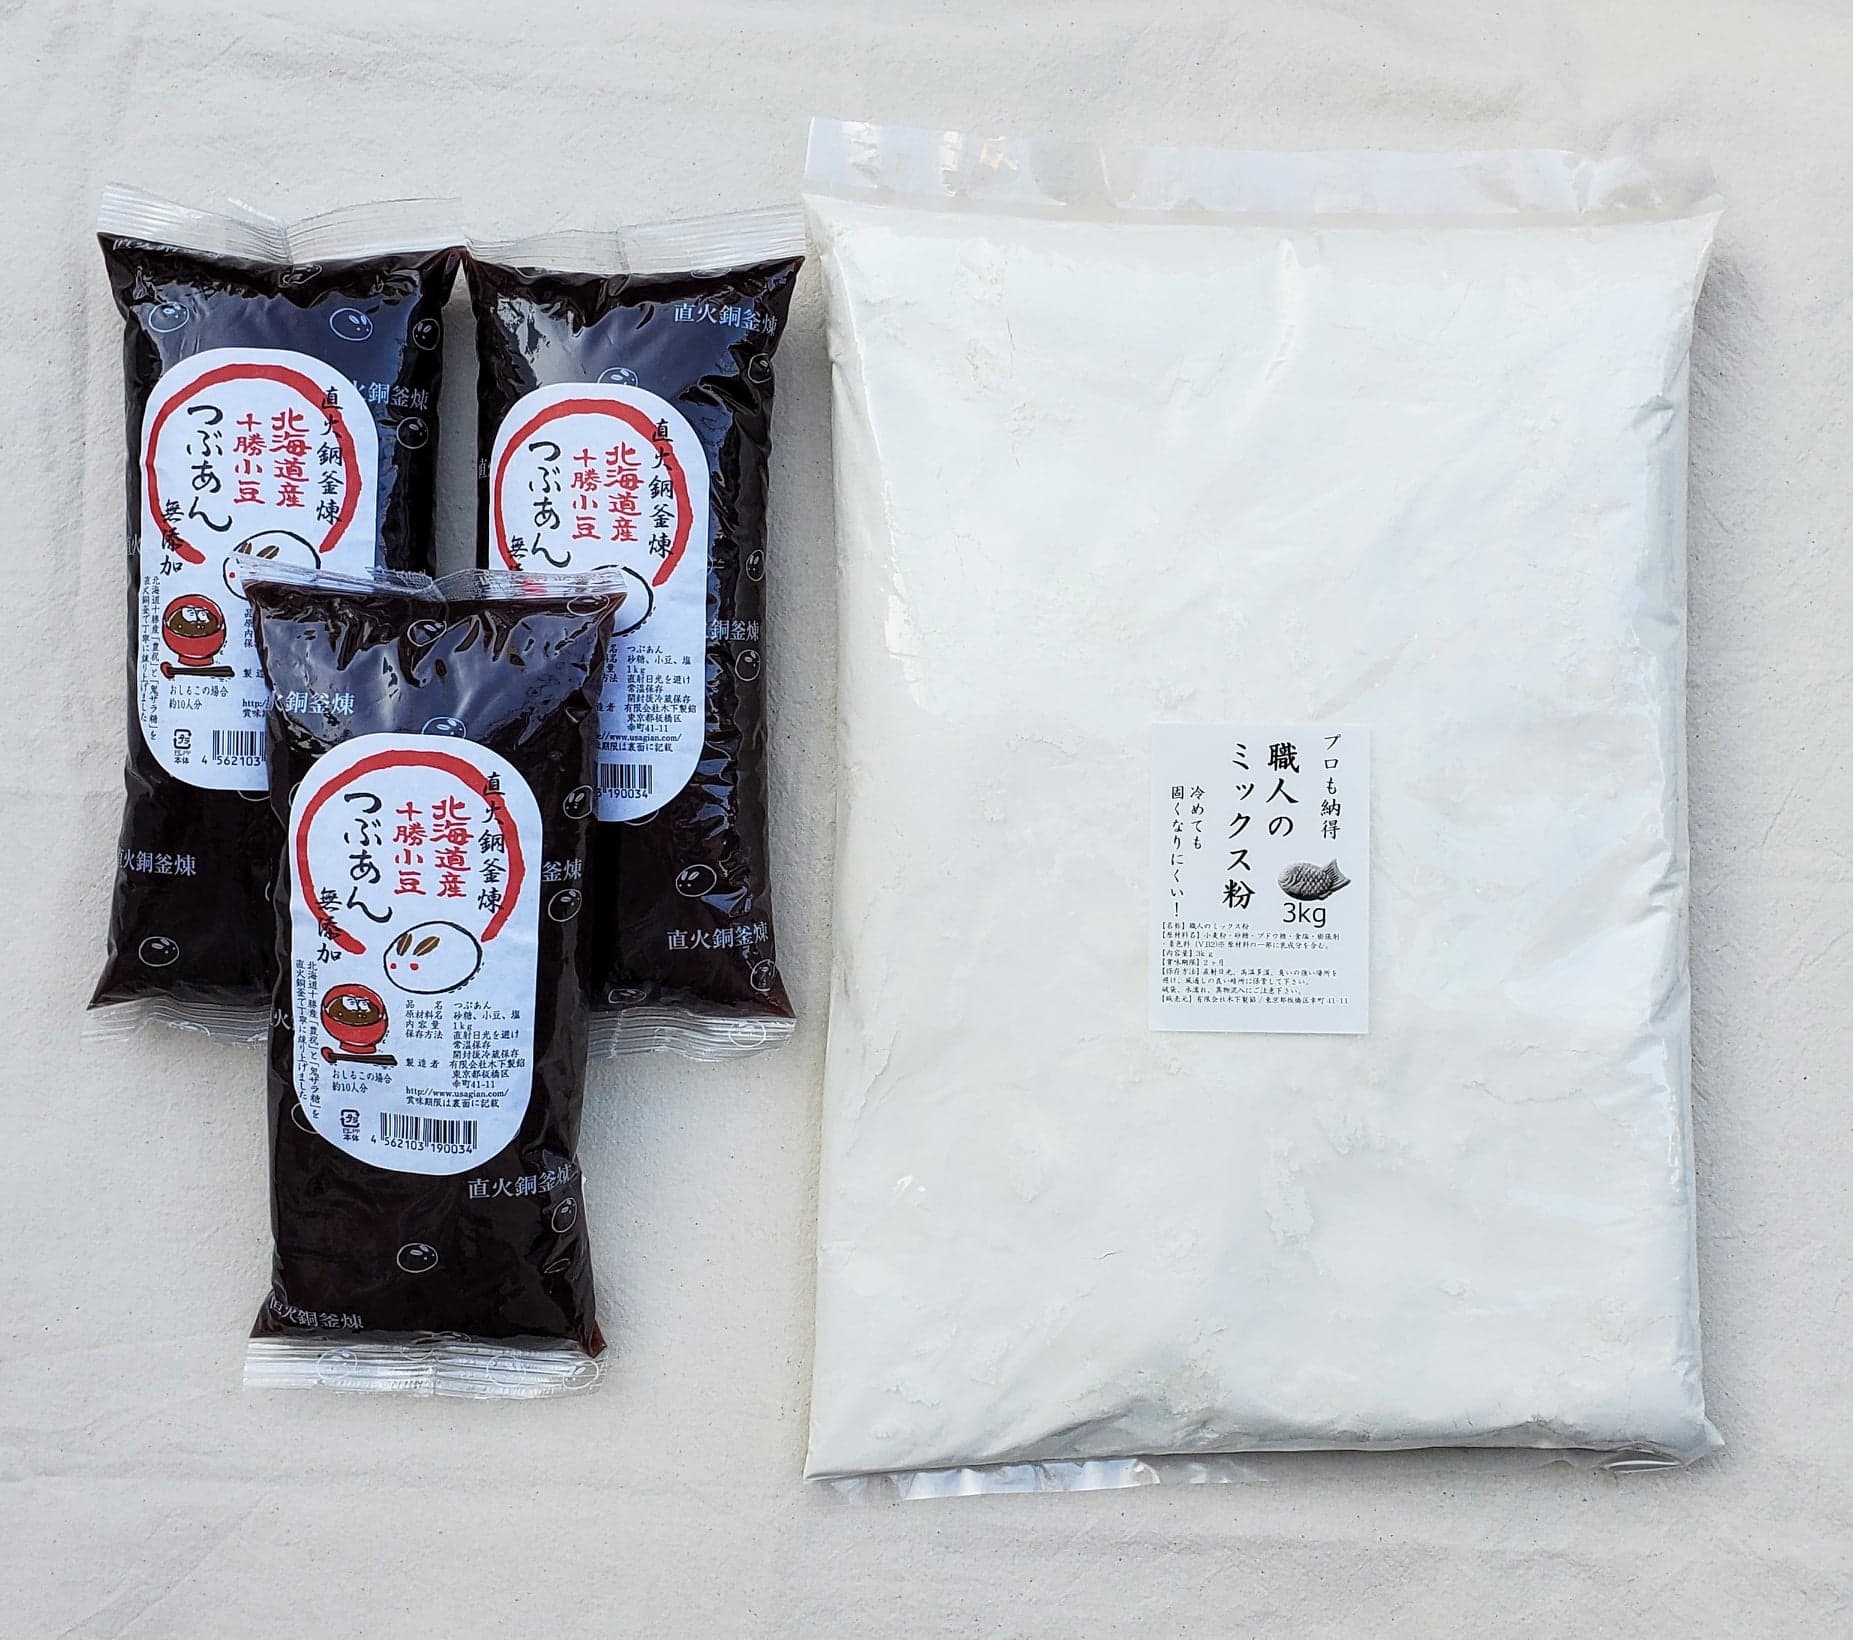 キノアンと千葉製粉が共同開発したオリジナルの職人のミックス粉を3kgに小分けにしています。焼き方レシピ付き。今川焼・たい焼き、焼き方研修しております。（有料）